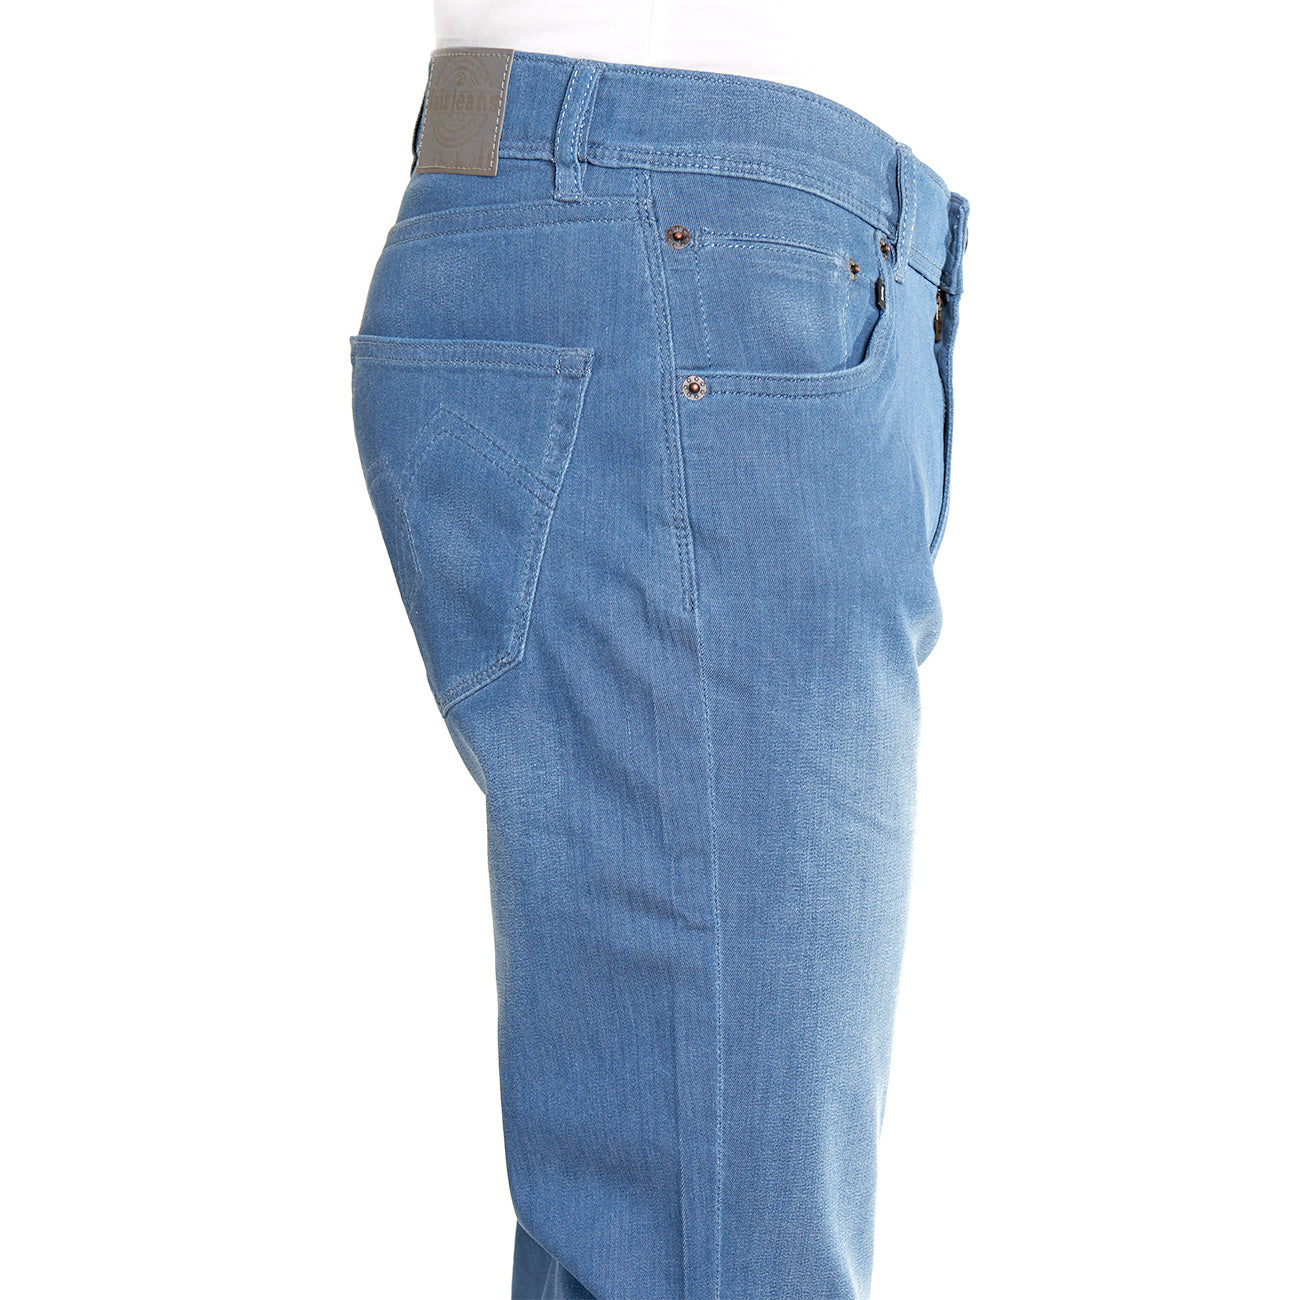 Sommer-Jeans von fairjeans: Gerade geschnittene Herren Regular Fit Jeans aus Bio-Baumwolle mit leichtem Denim - bequem und nachhaltig produziert.